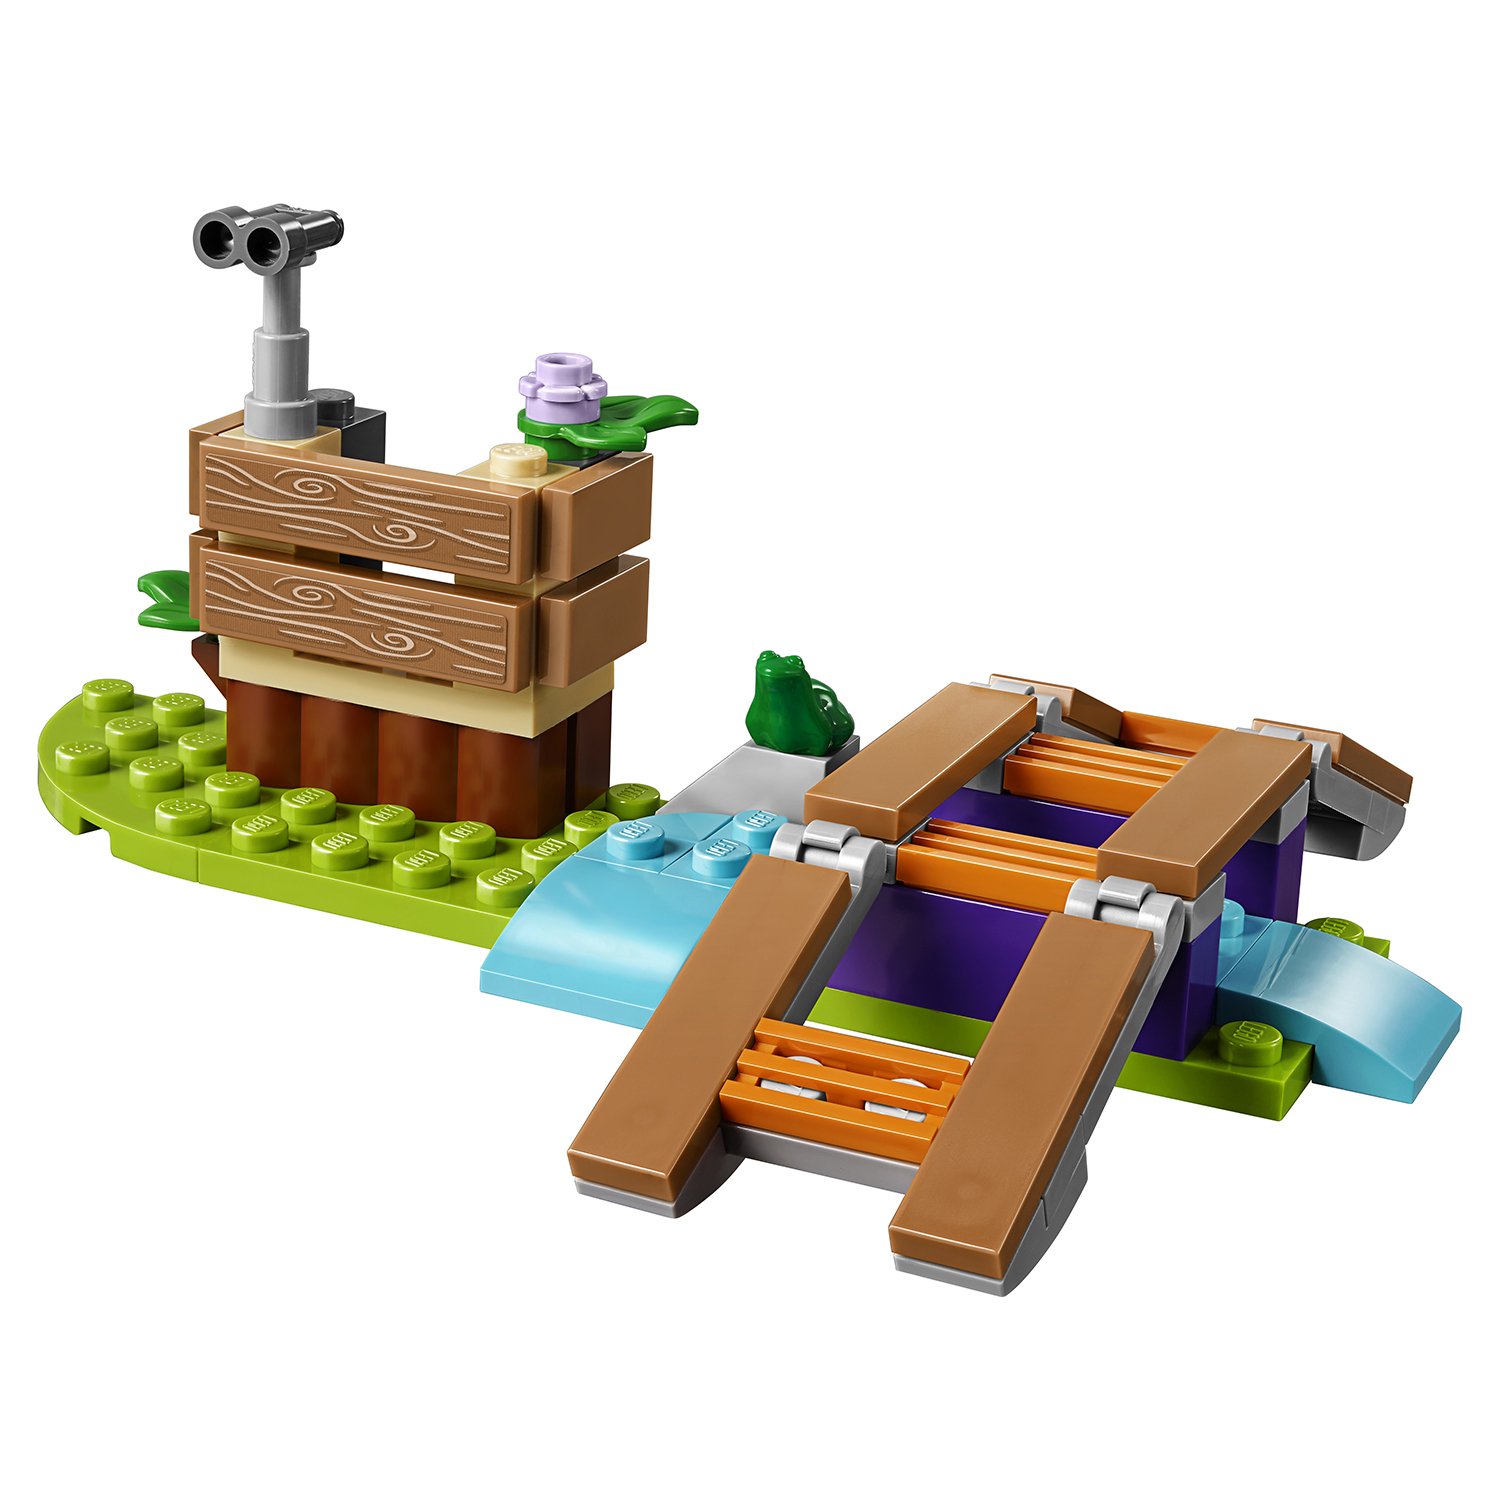 Lego Friends 41363 Приключения Мии в лесу